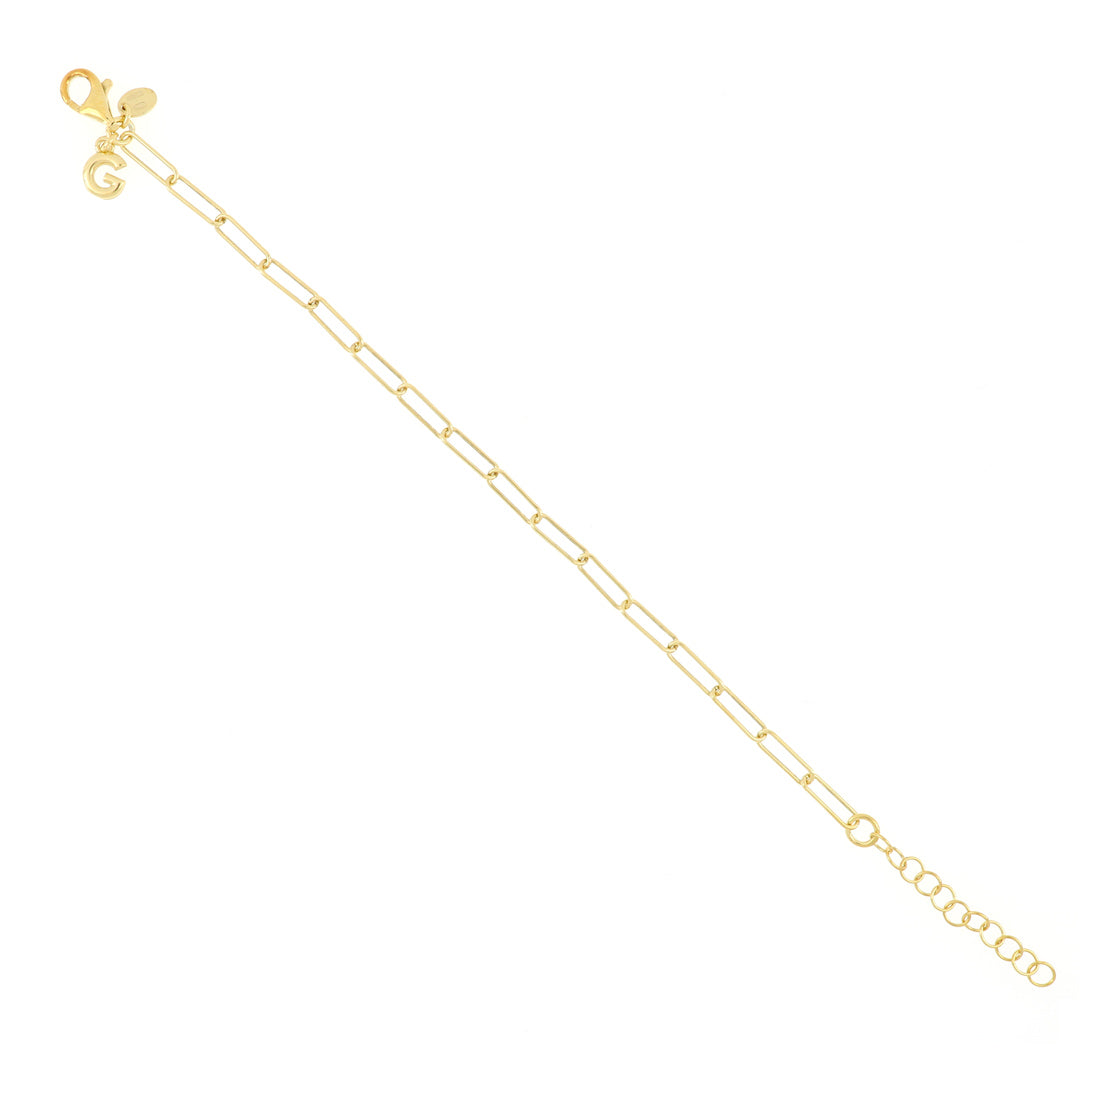 Bracciale leggero con maglie rettangolari semplici, realizzato in argento e placcato oro